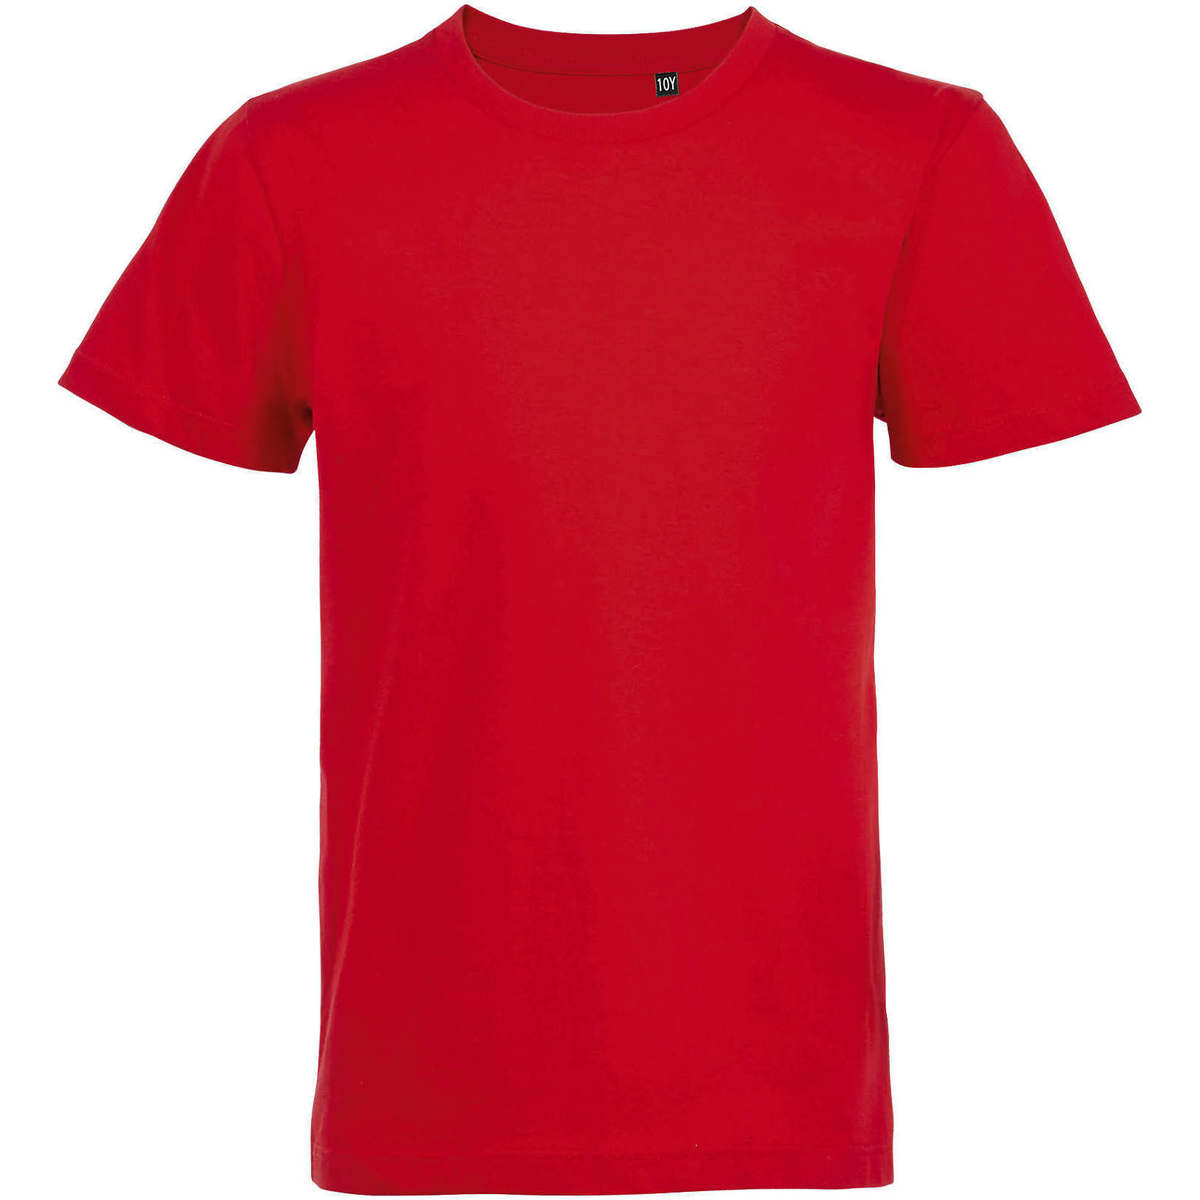 tekstylia Dziecko T-shirty z krótkim rękawem Sols CAMISETA DE MANGA CORTA Czerwony